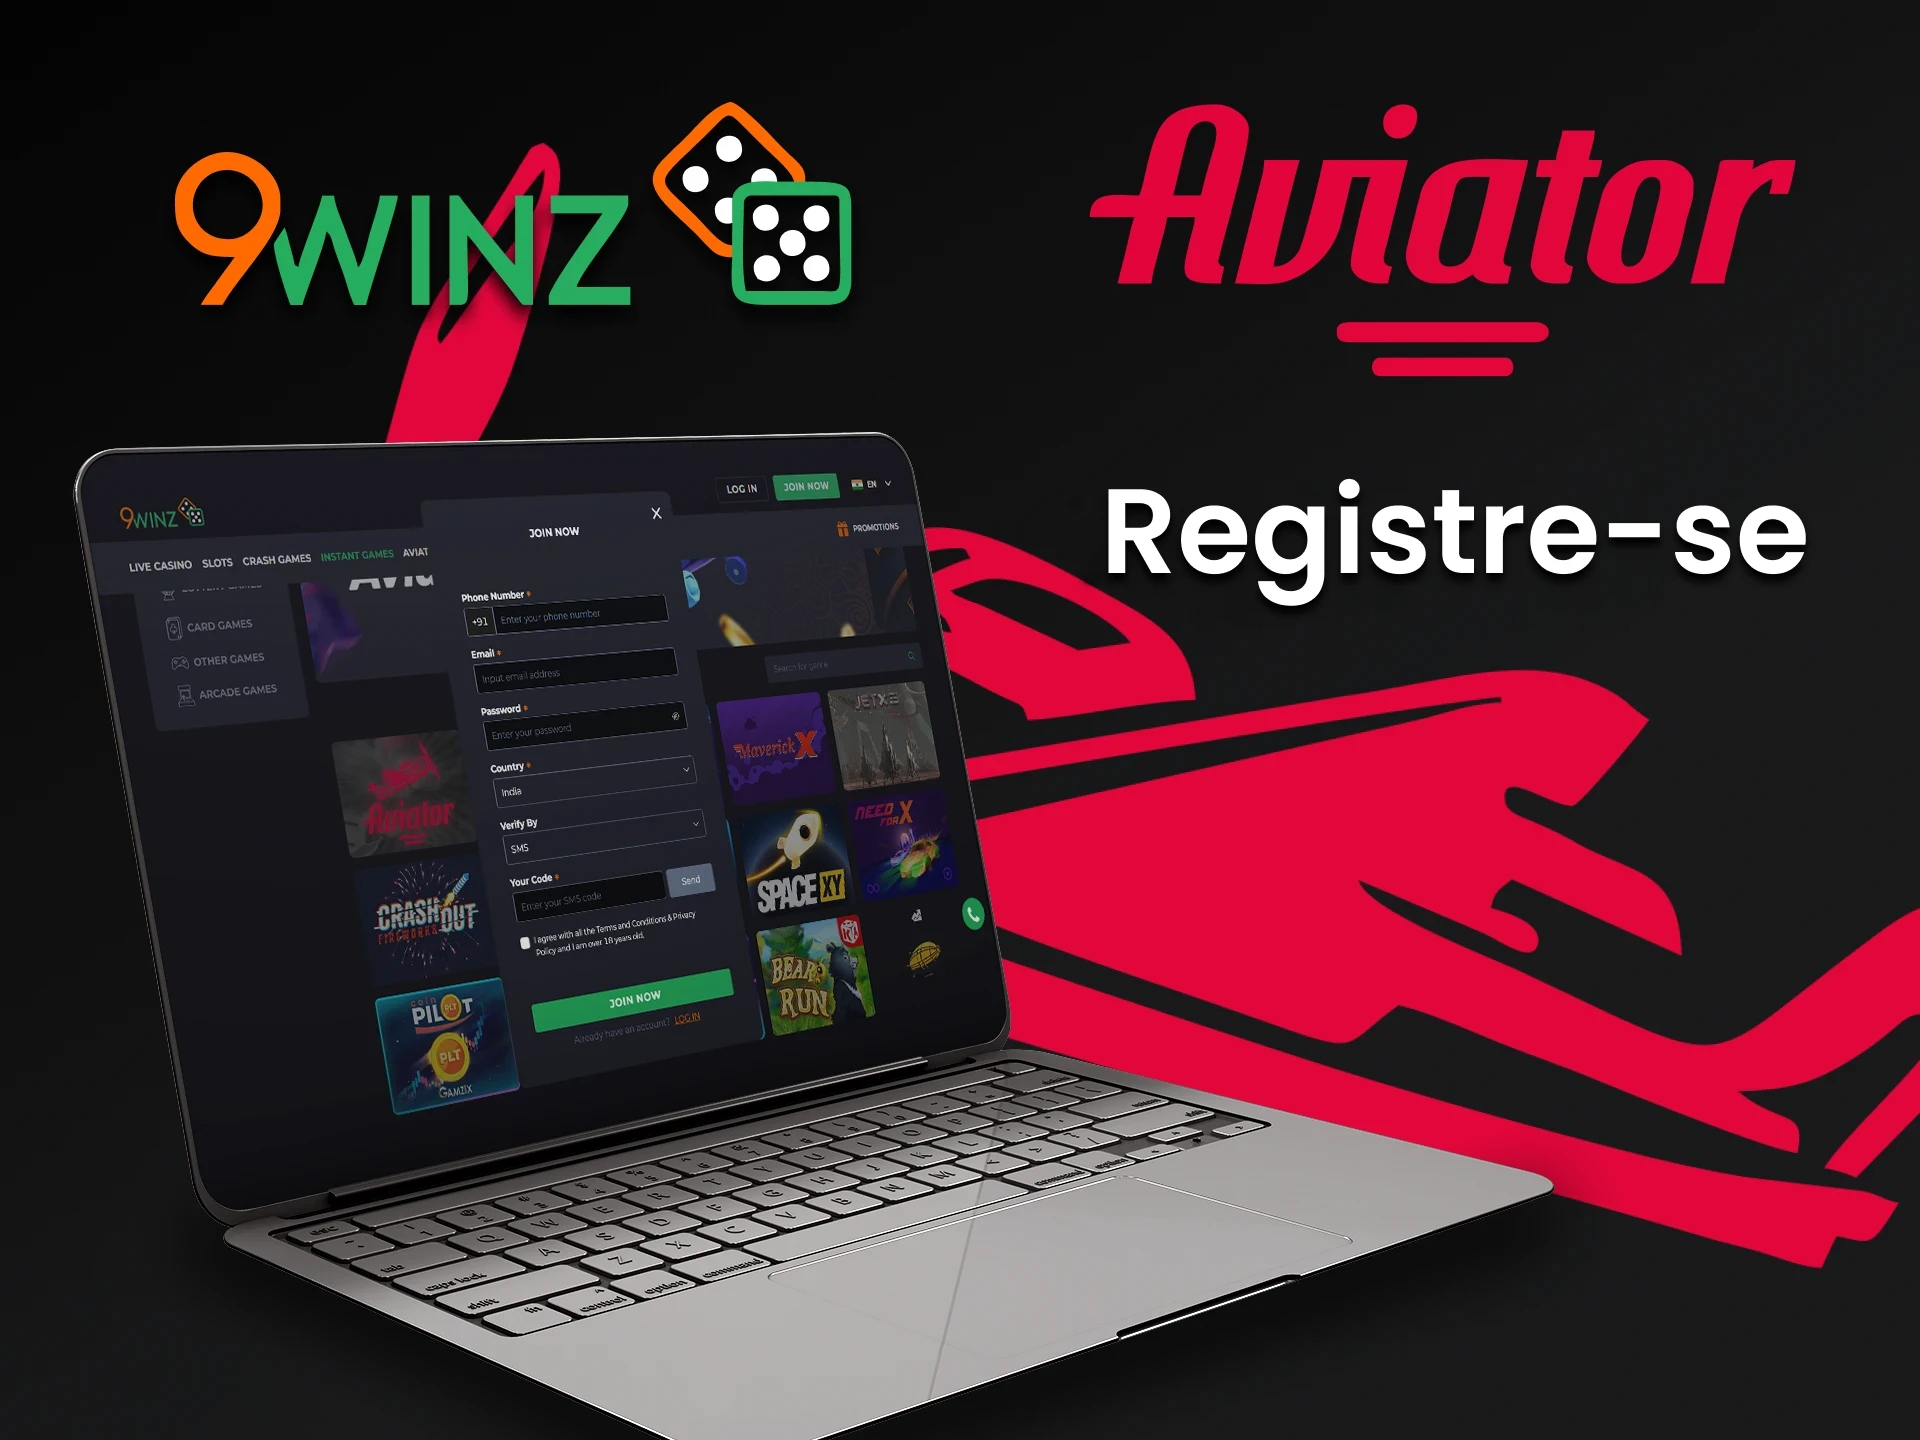 Crie uma conta no 9winz para jogar Aviator.